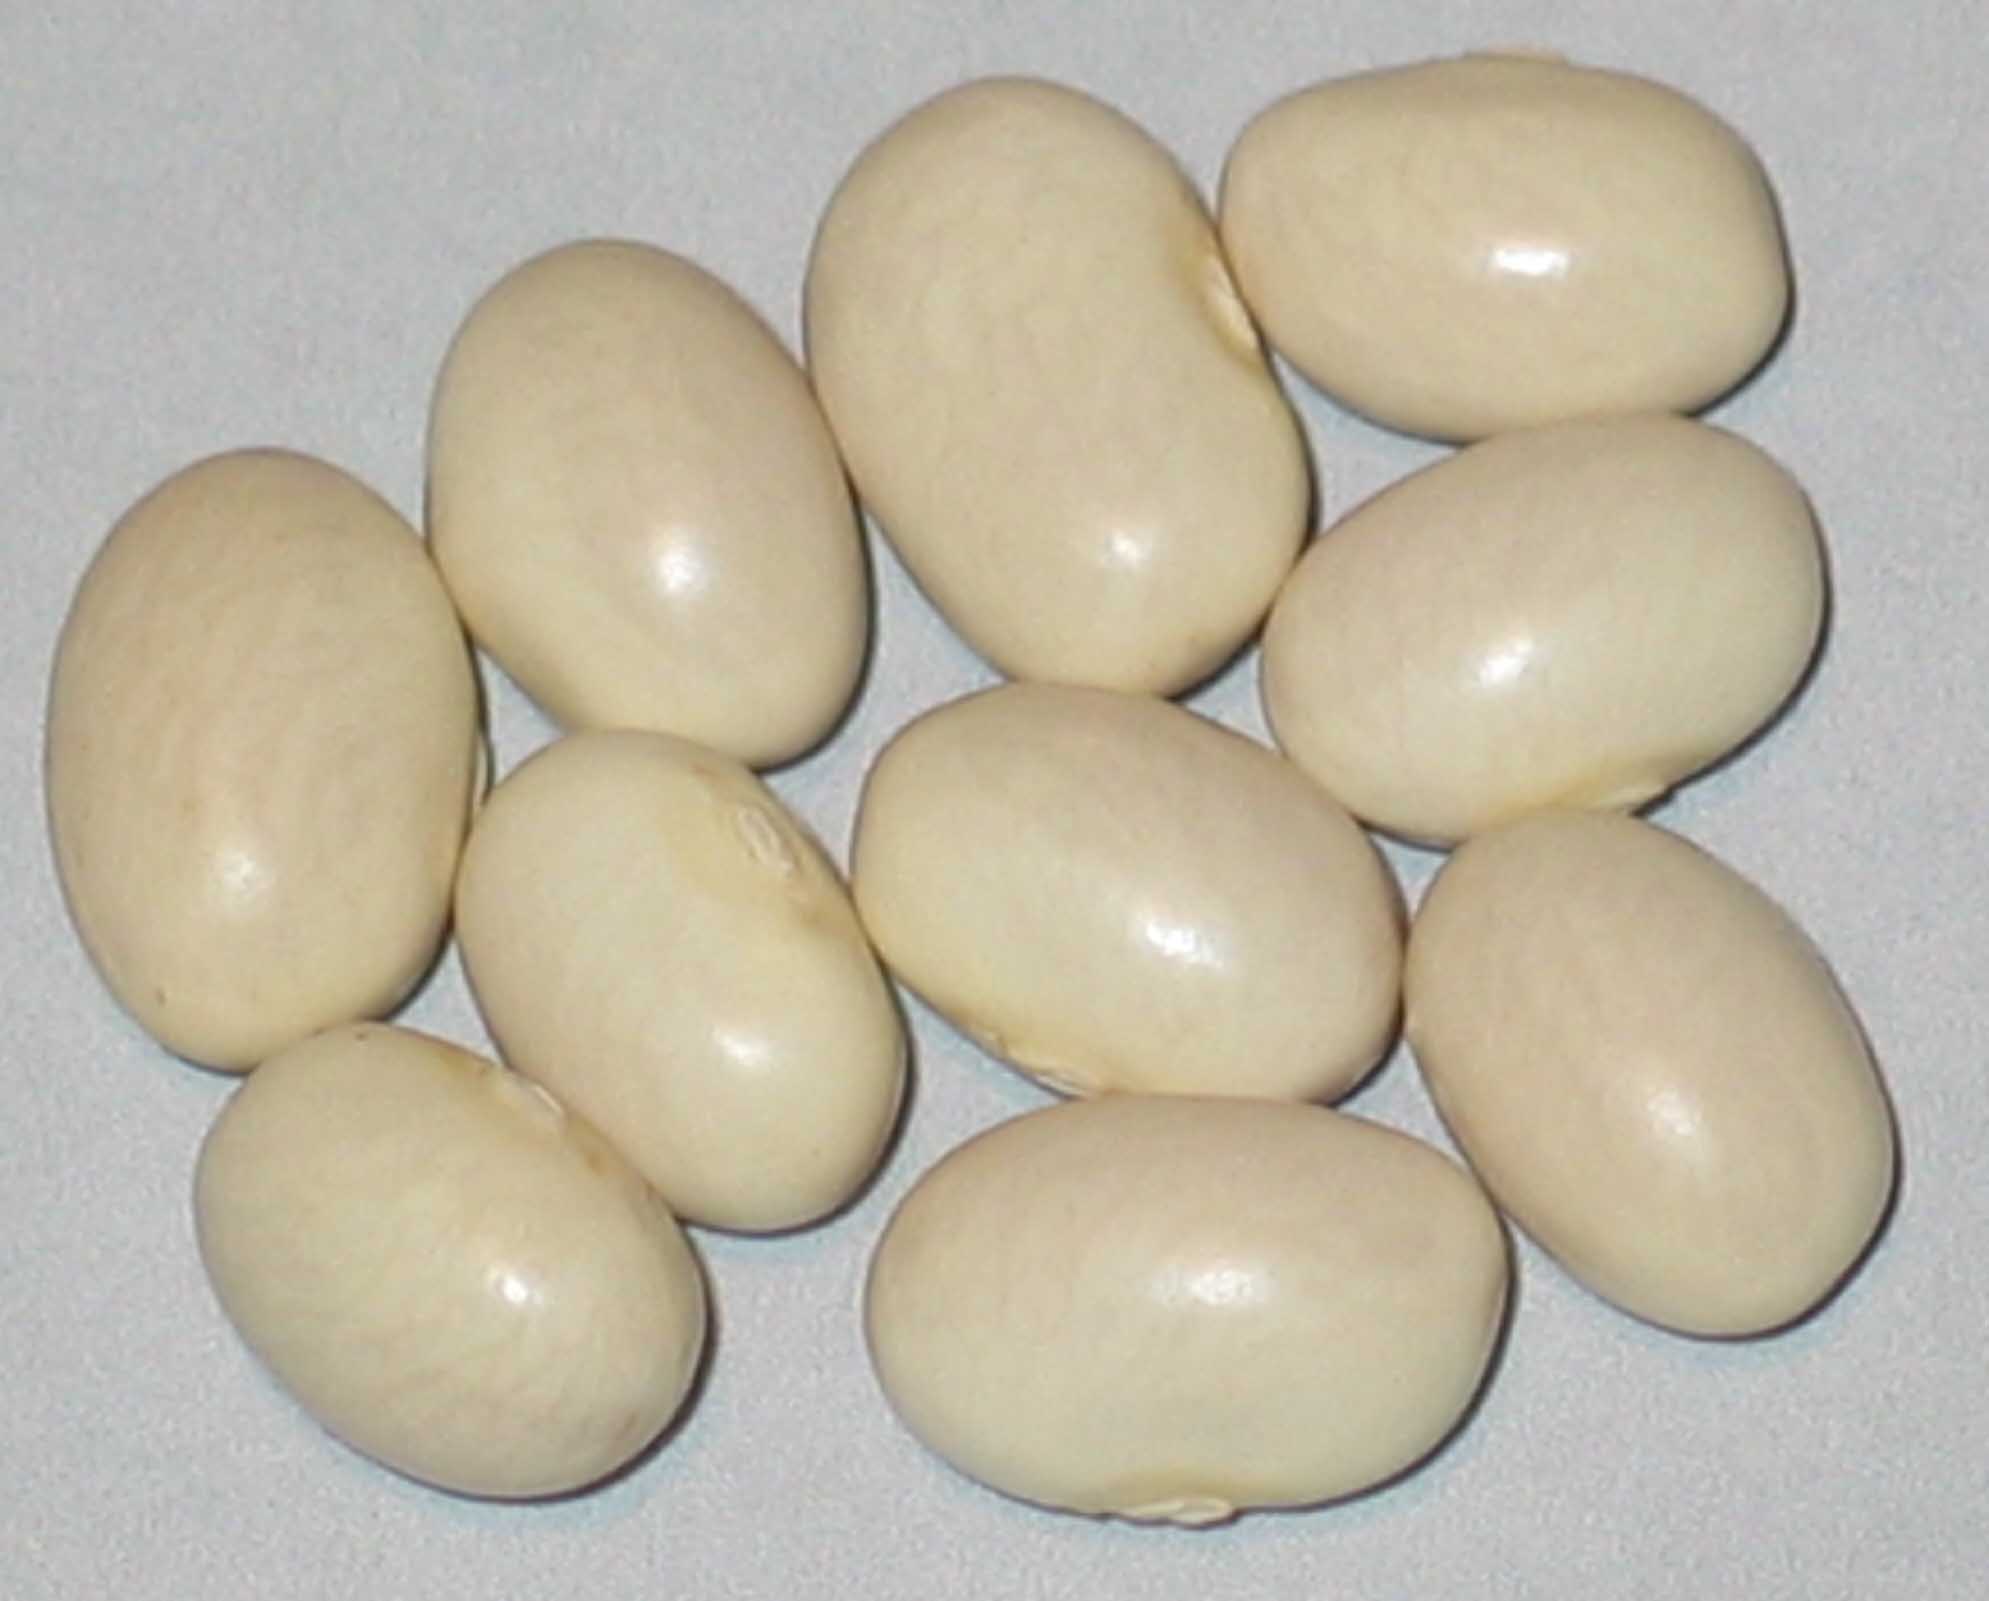 image of Idaho Marrow beans